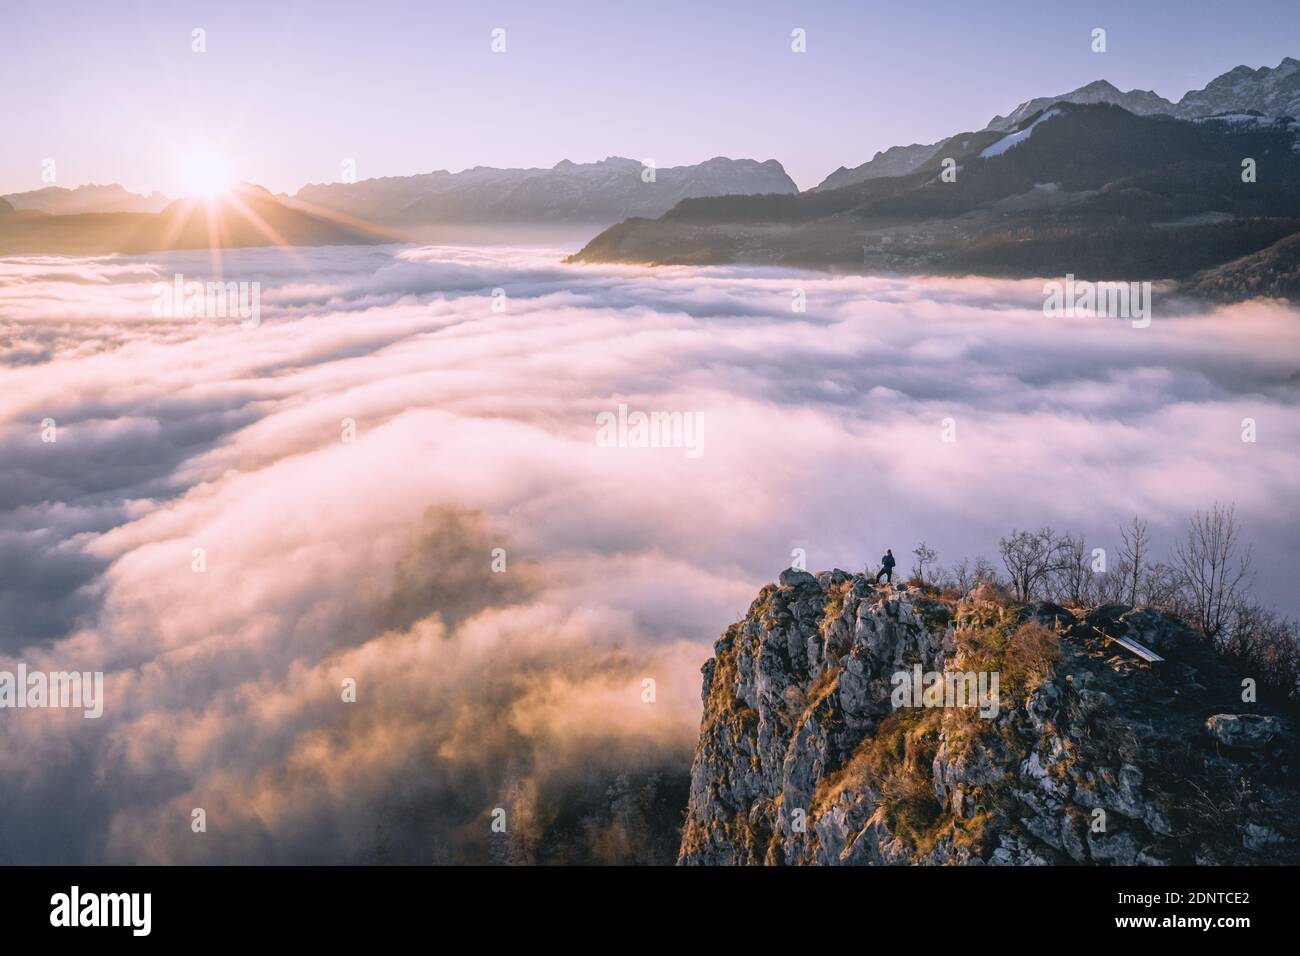 Hombre de pie en la cresta de la montaña que se eleva por encima de la alfombra de nubes, Hallein, Salzburgo, Austria Foto de stock